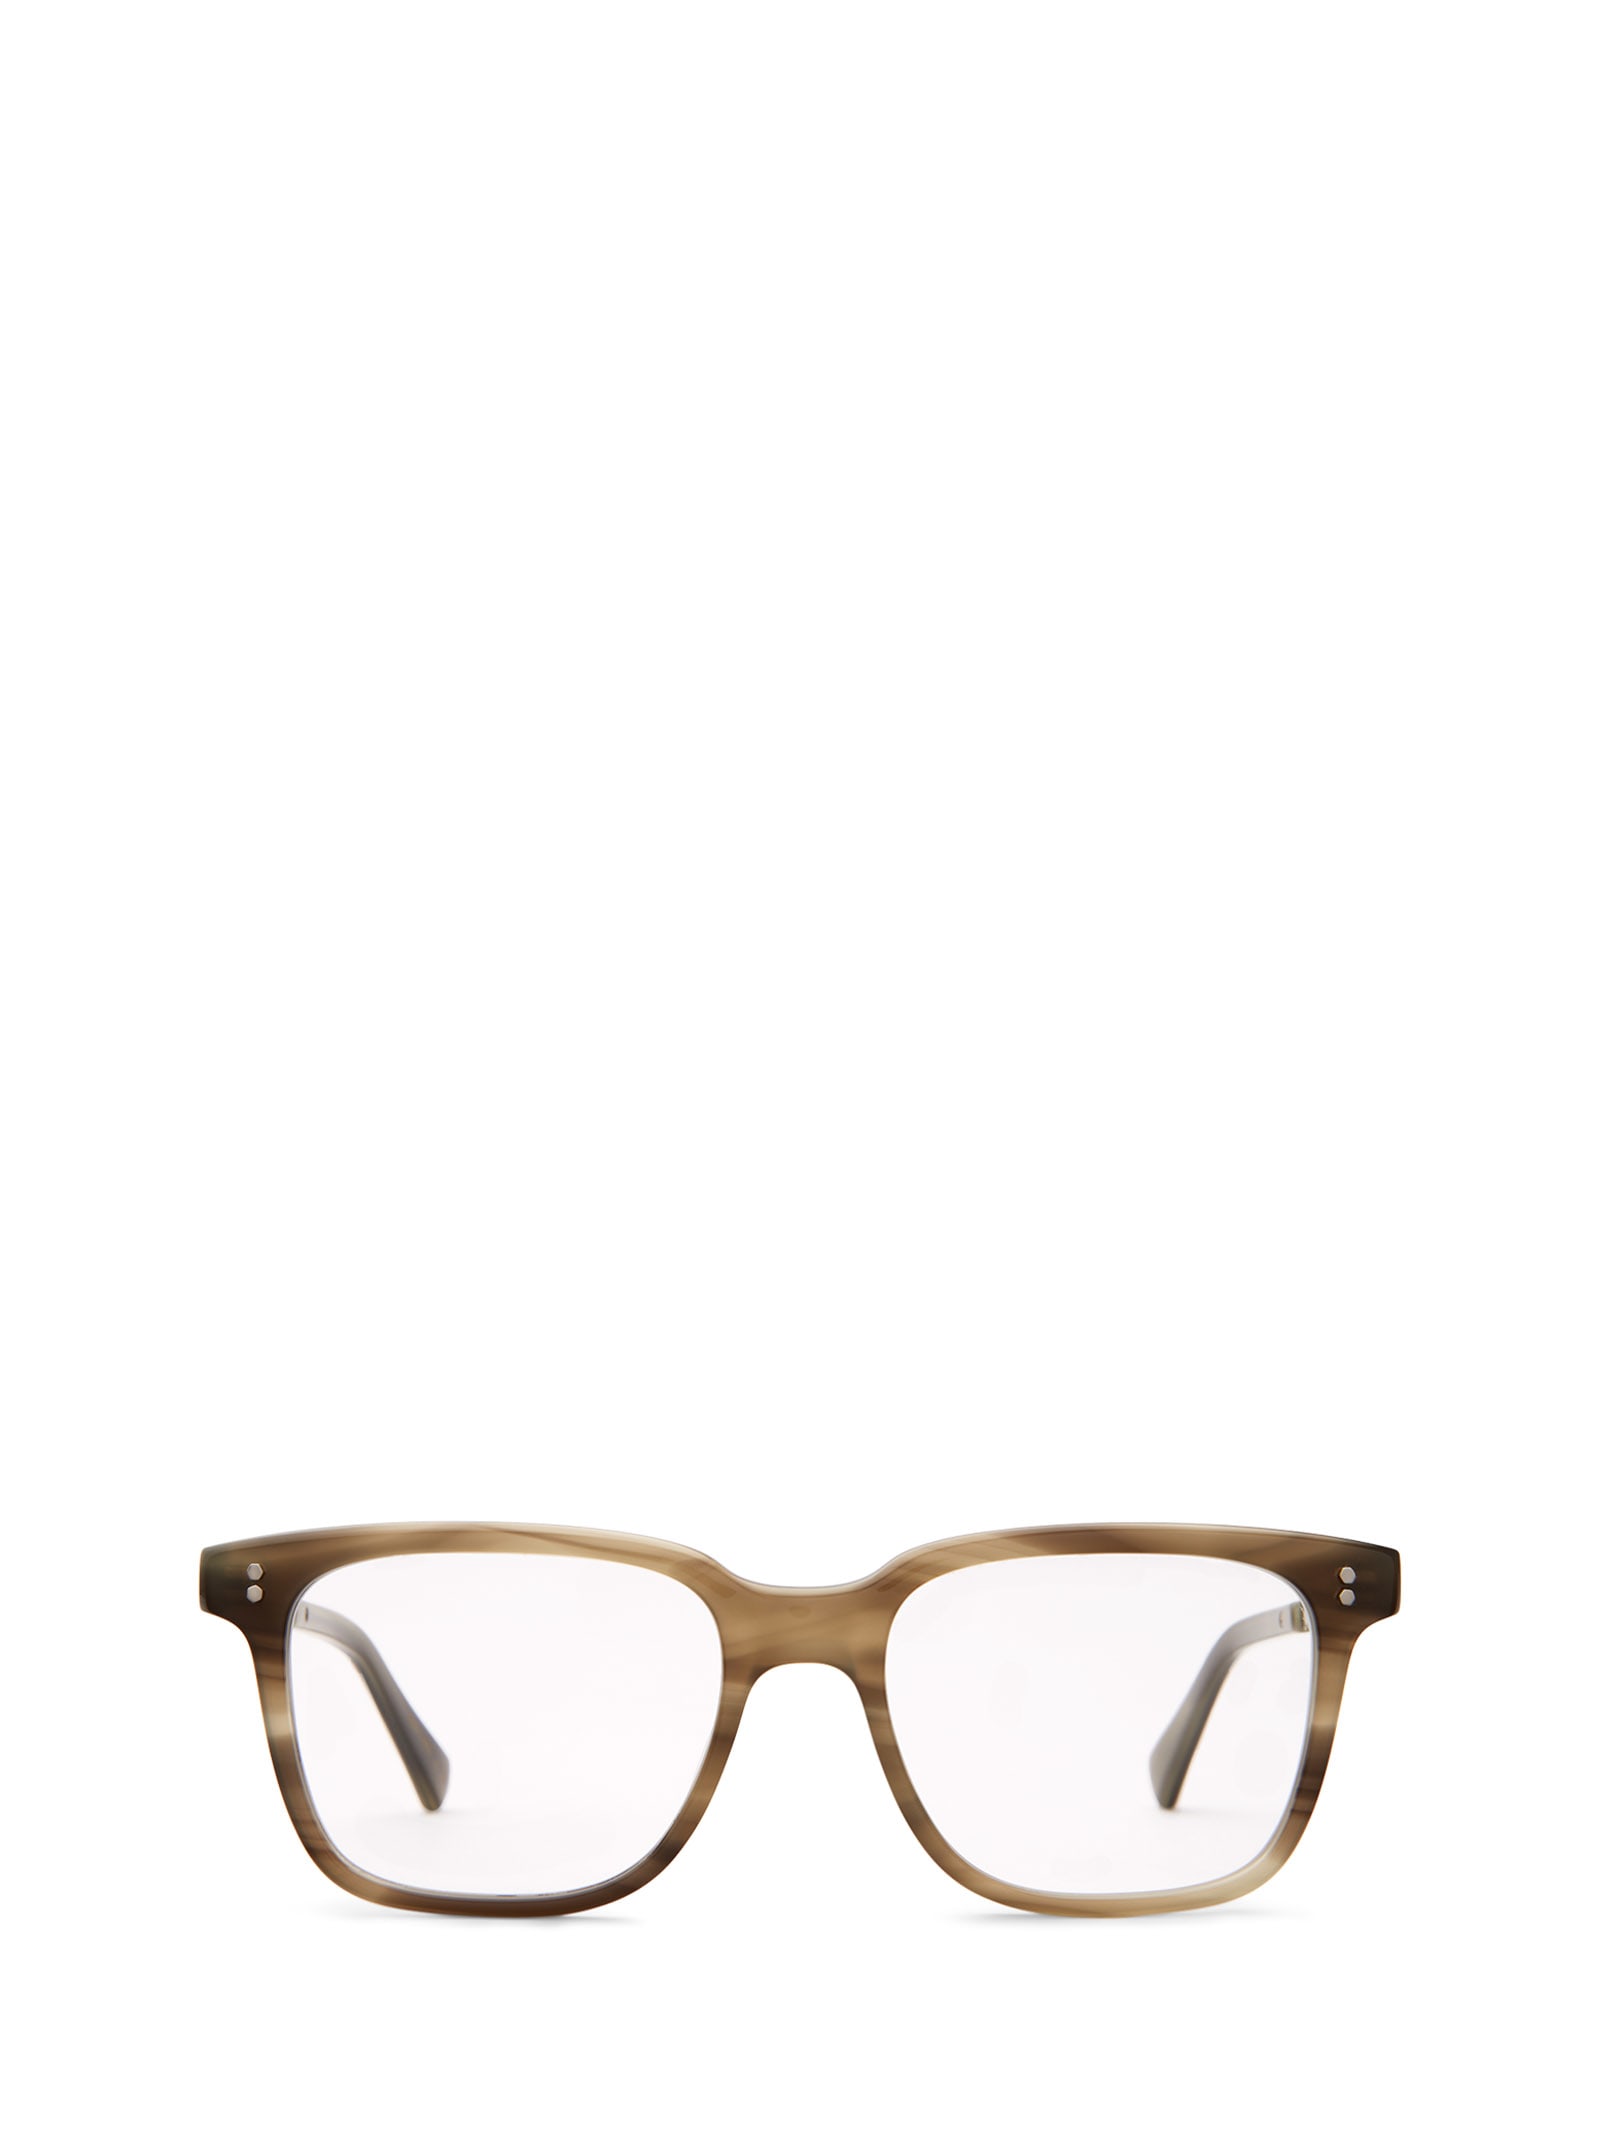 Lautner C Sycamore-pewter Glasses